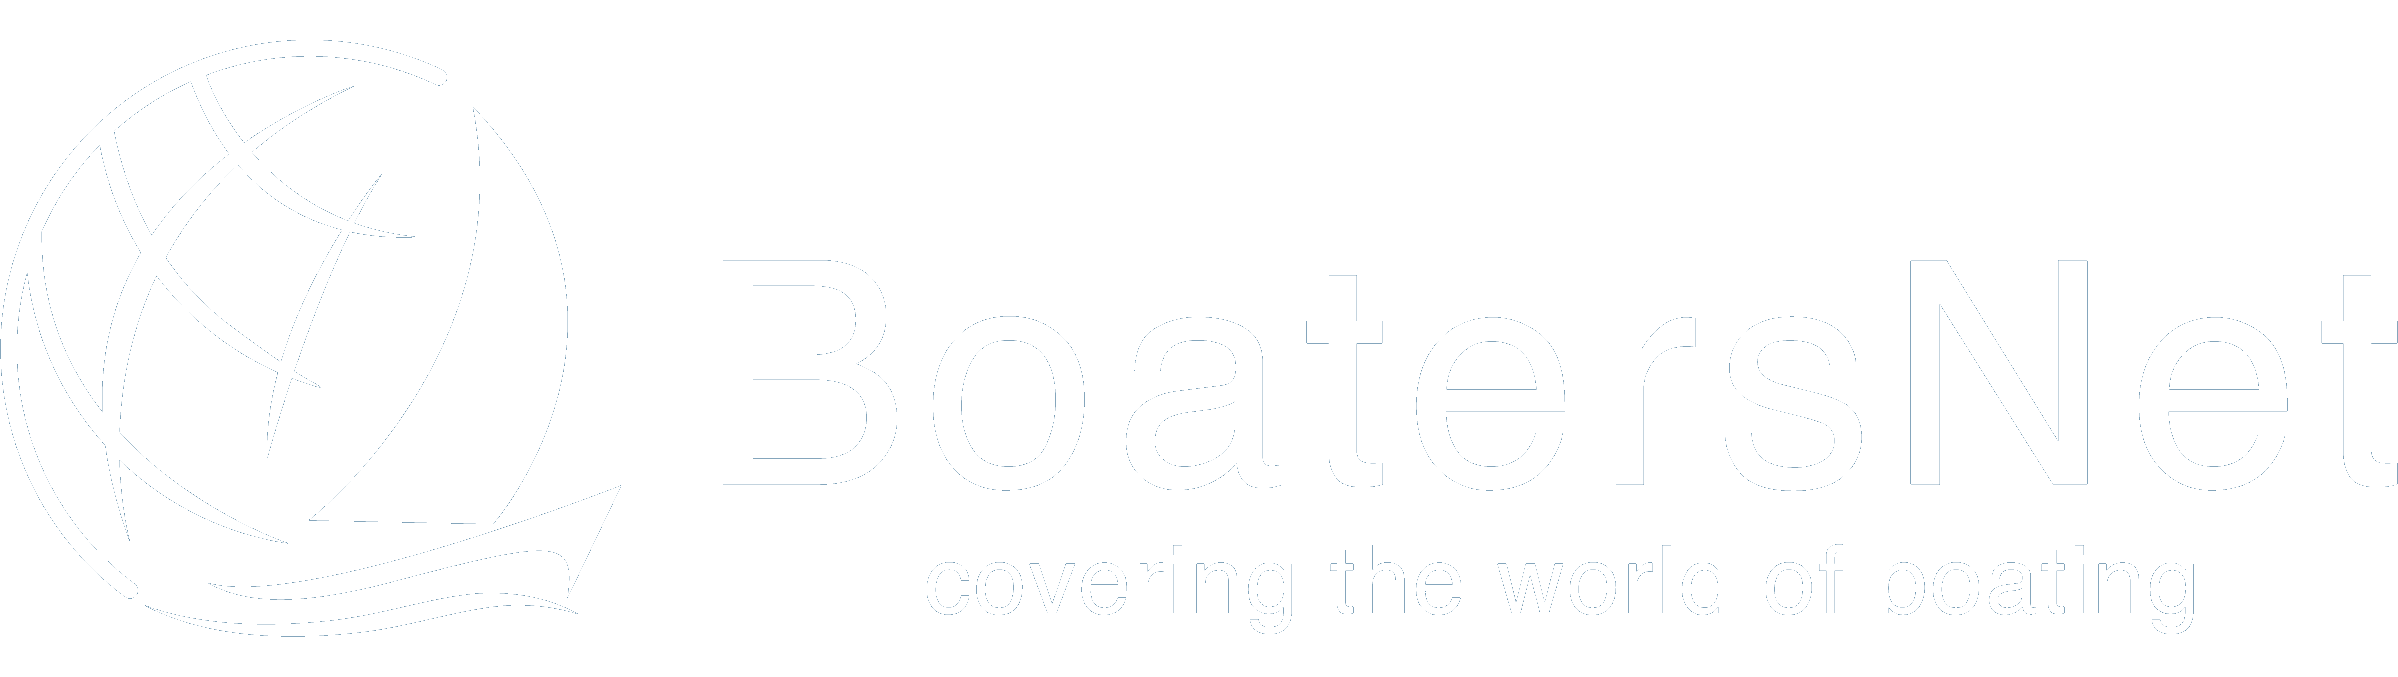 BoatersNet logo